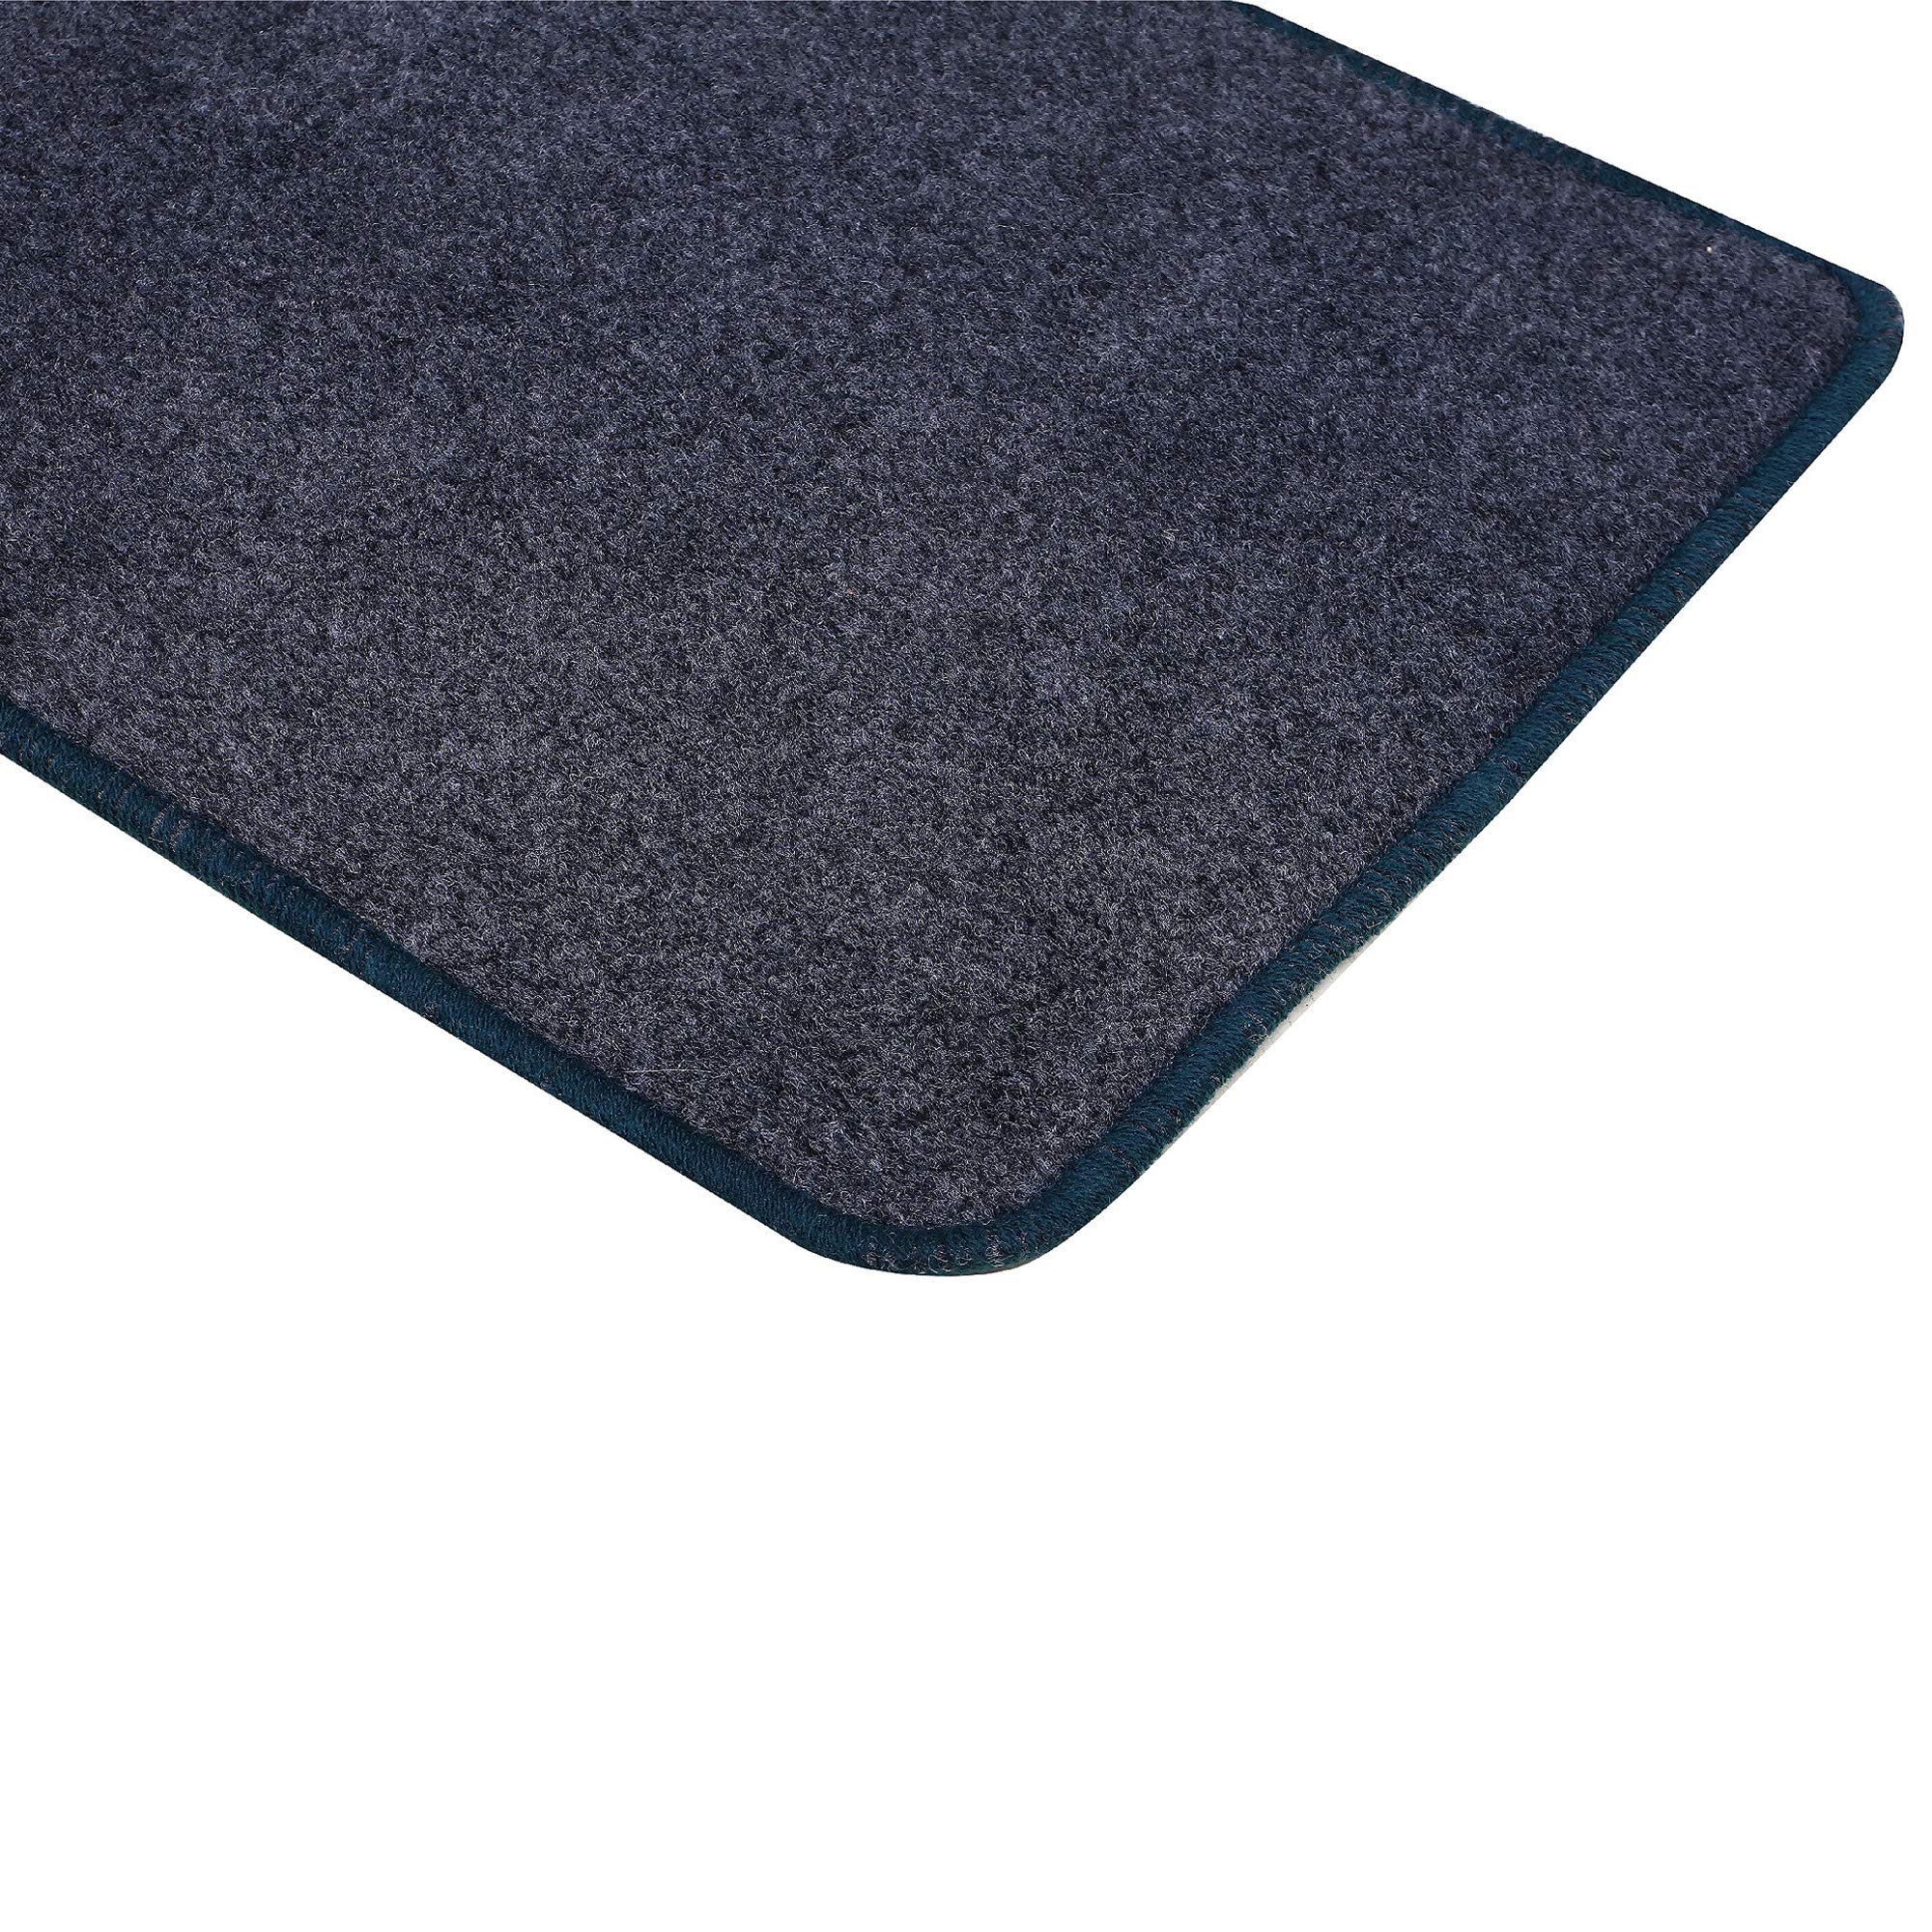 Kuber Industries Microfiber Anti Slip Door Mat (Grey, 22"x14") - CTKTC039888-6 Pieces